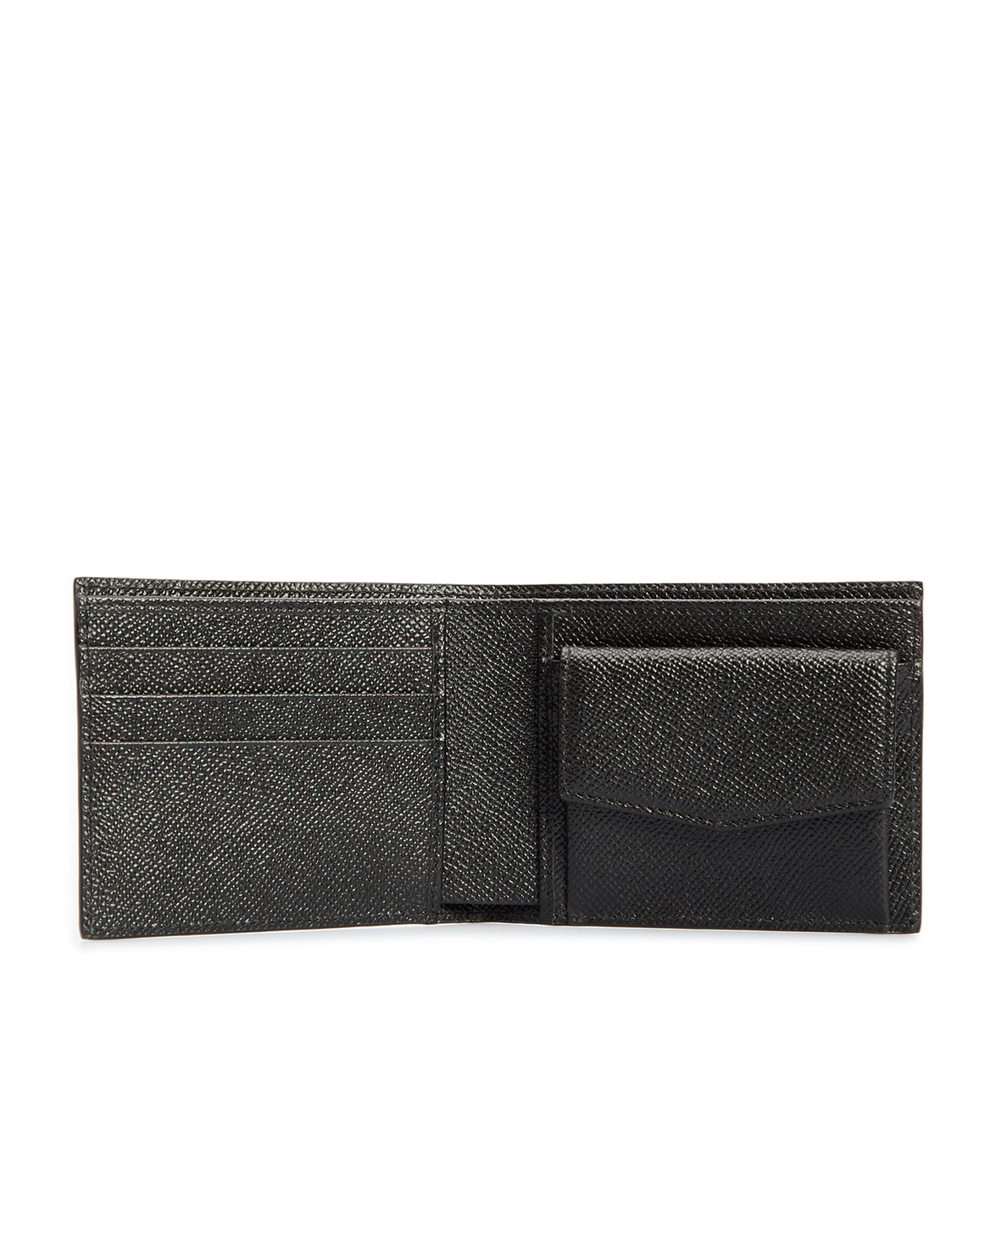 Кожаный кошелек Dolce&Gabbana BP3102-AZ602, черный цвет • Купить в интернет-магазине Kameron